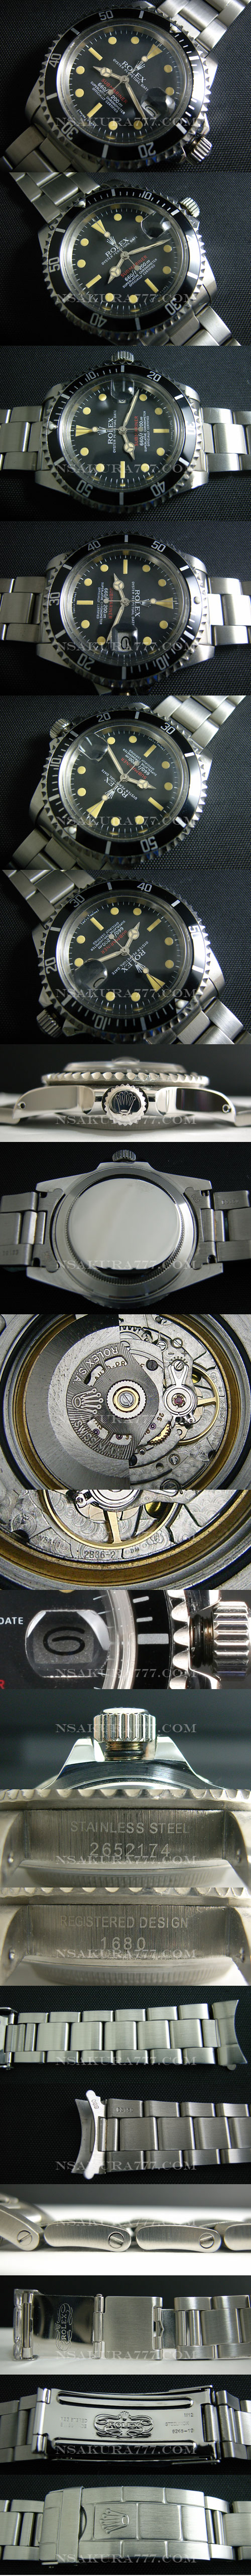 レプリカ時計ロレックス サブマリーナ 1680旧サブ 赤サブ初期モデル最新改良白2836-2搭載 - ウインドウを閉じる